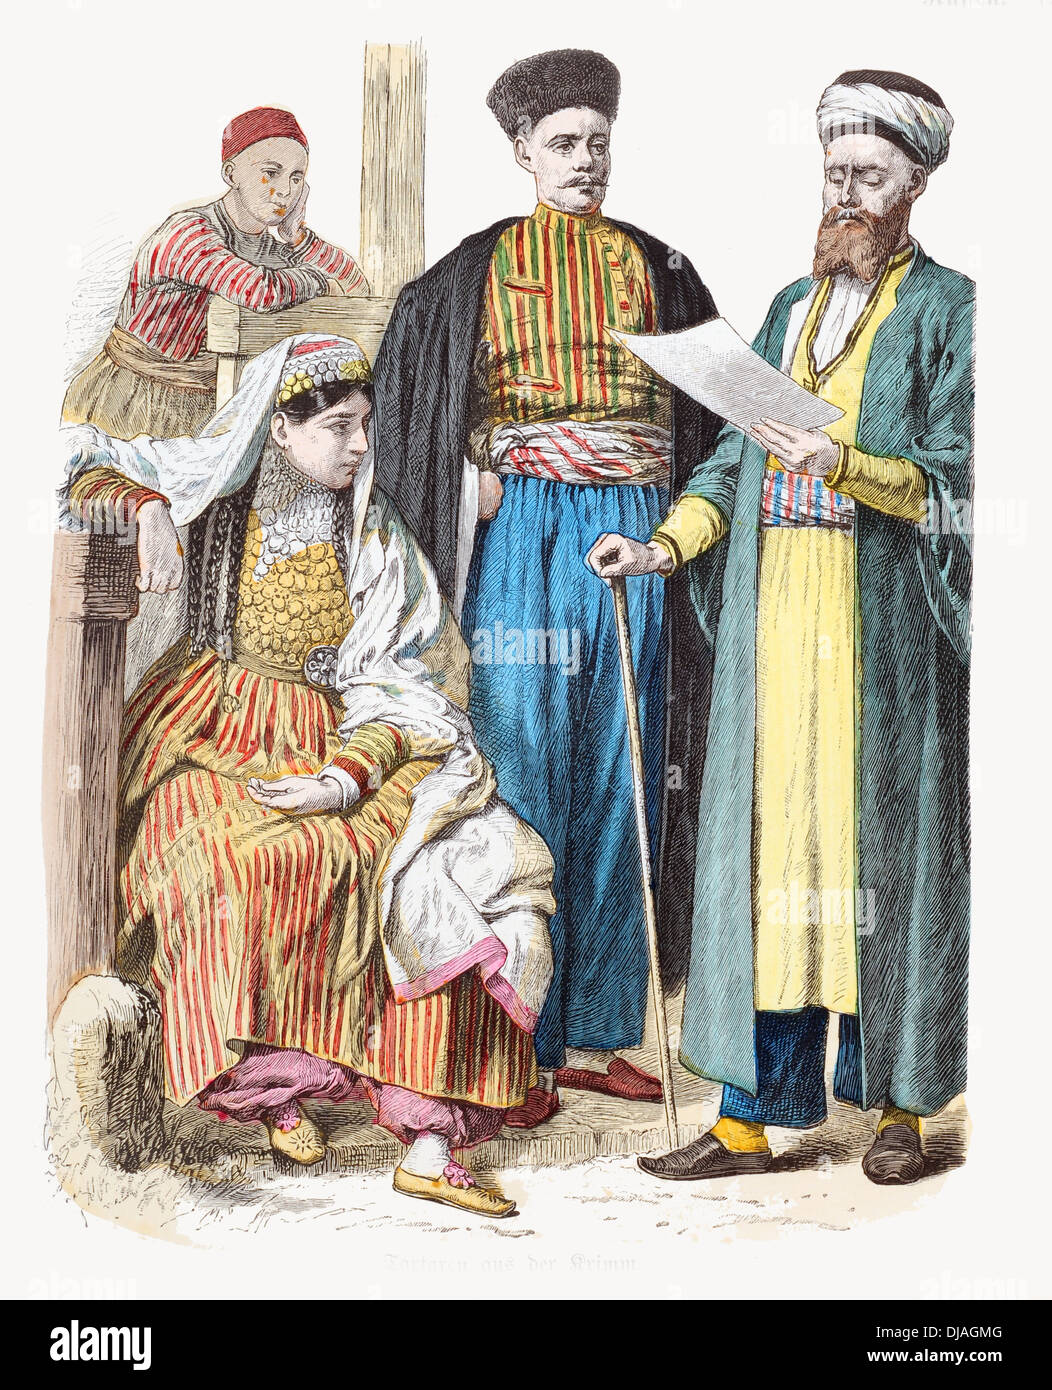 19e siècle XIX Tartares de Crimée en Russie Banque D'Images